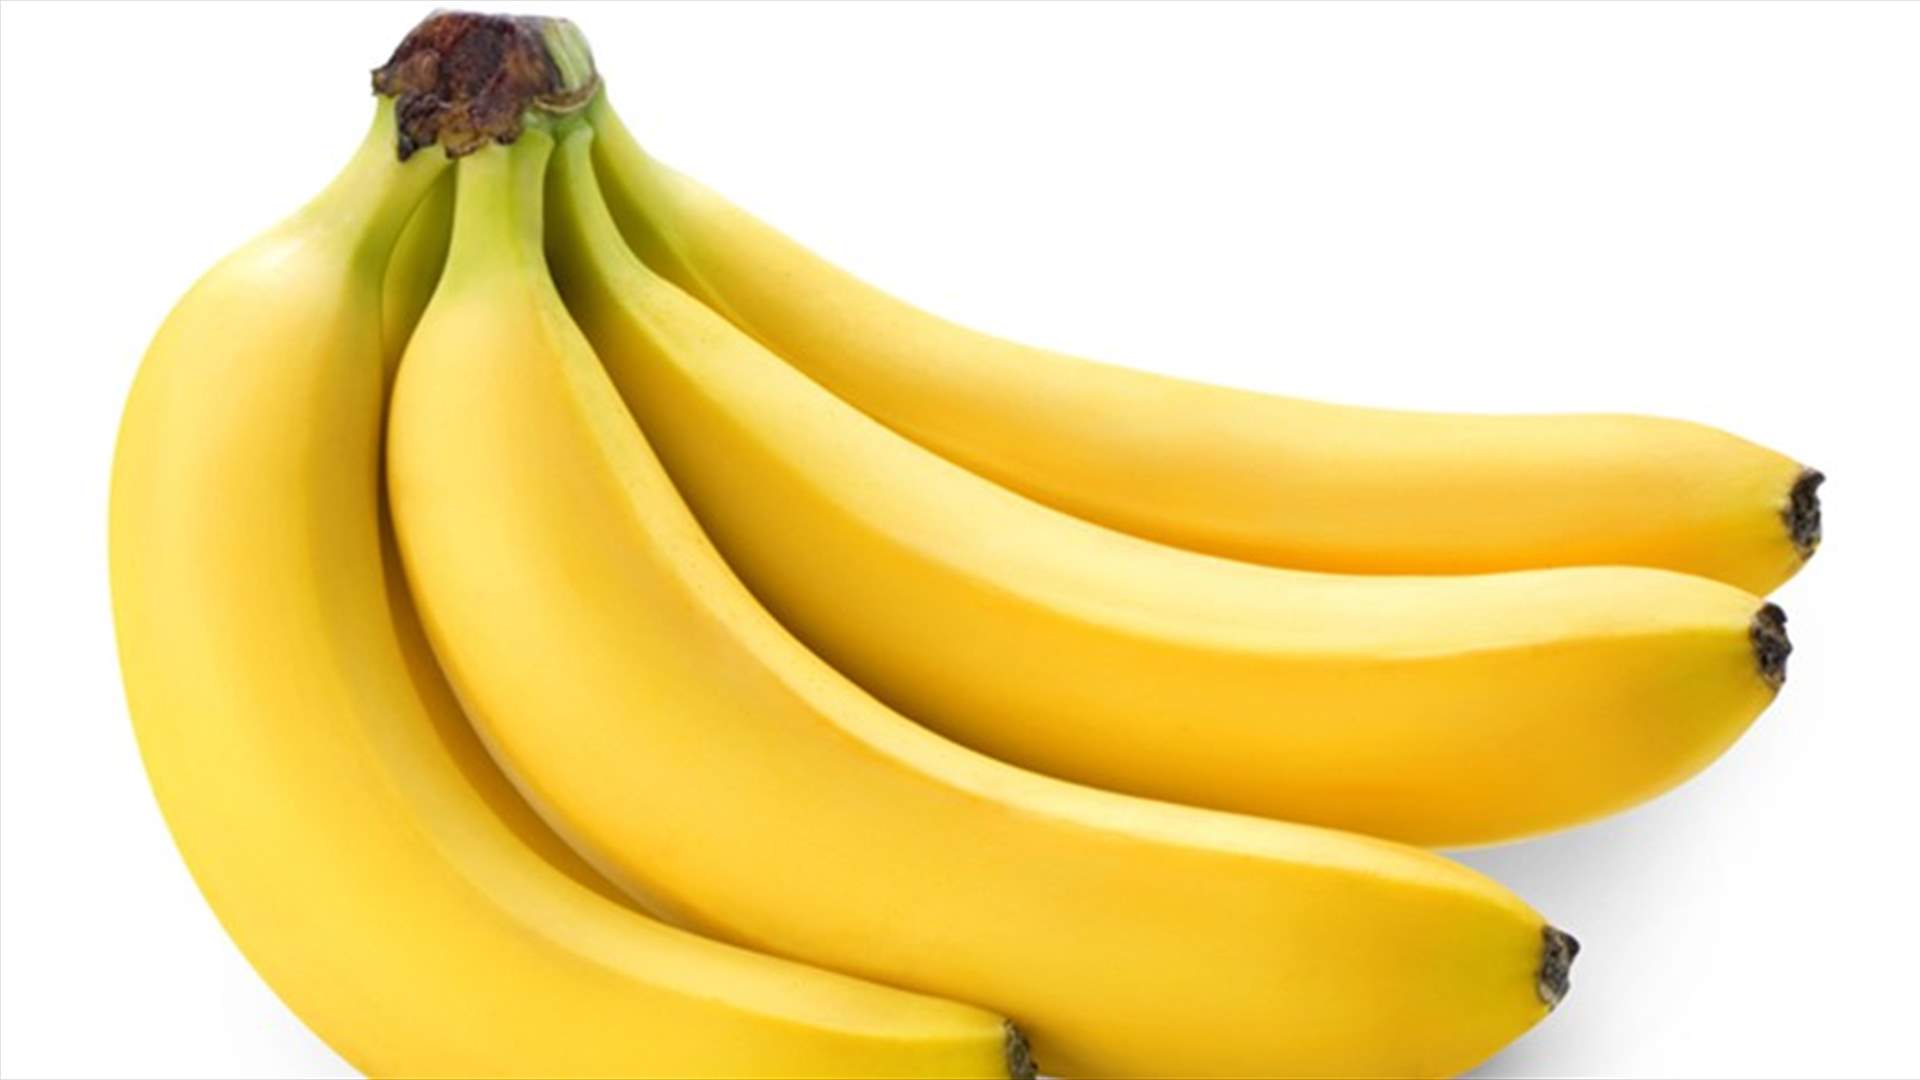 حيلة بسيطة لحفظ الموز لفترةٍ أطول... أنتم بحاجةٍ إلى ورق النايلون فقط!